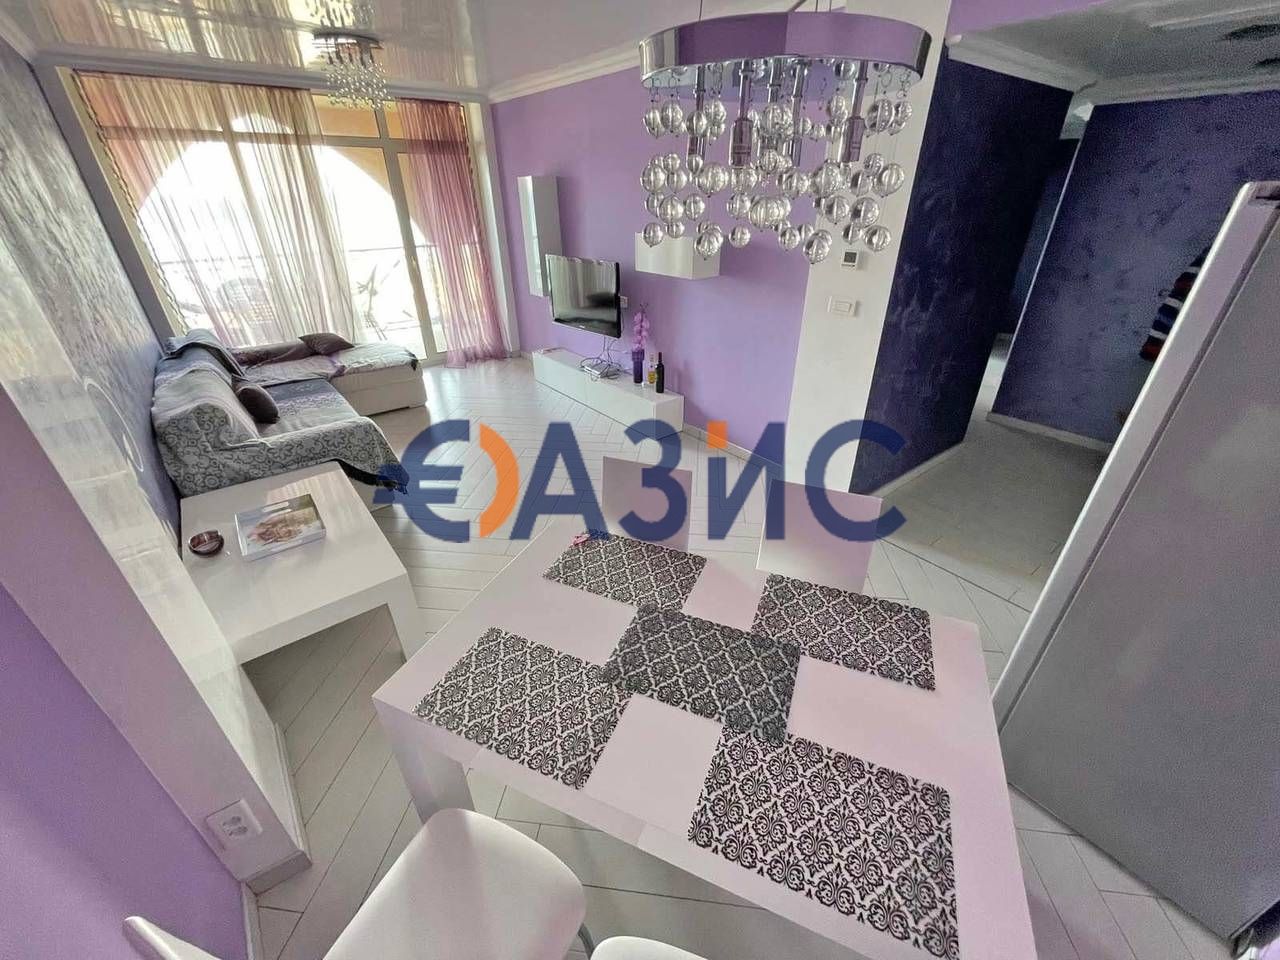 Apartment in Elenite, Bulgarien, 100 m2 - Foto 1